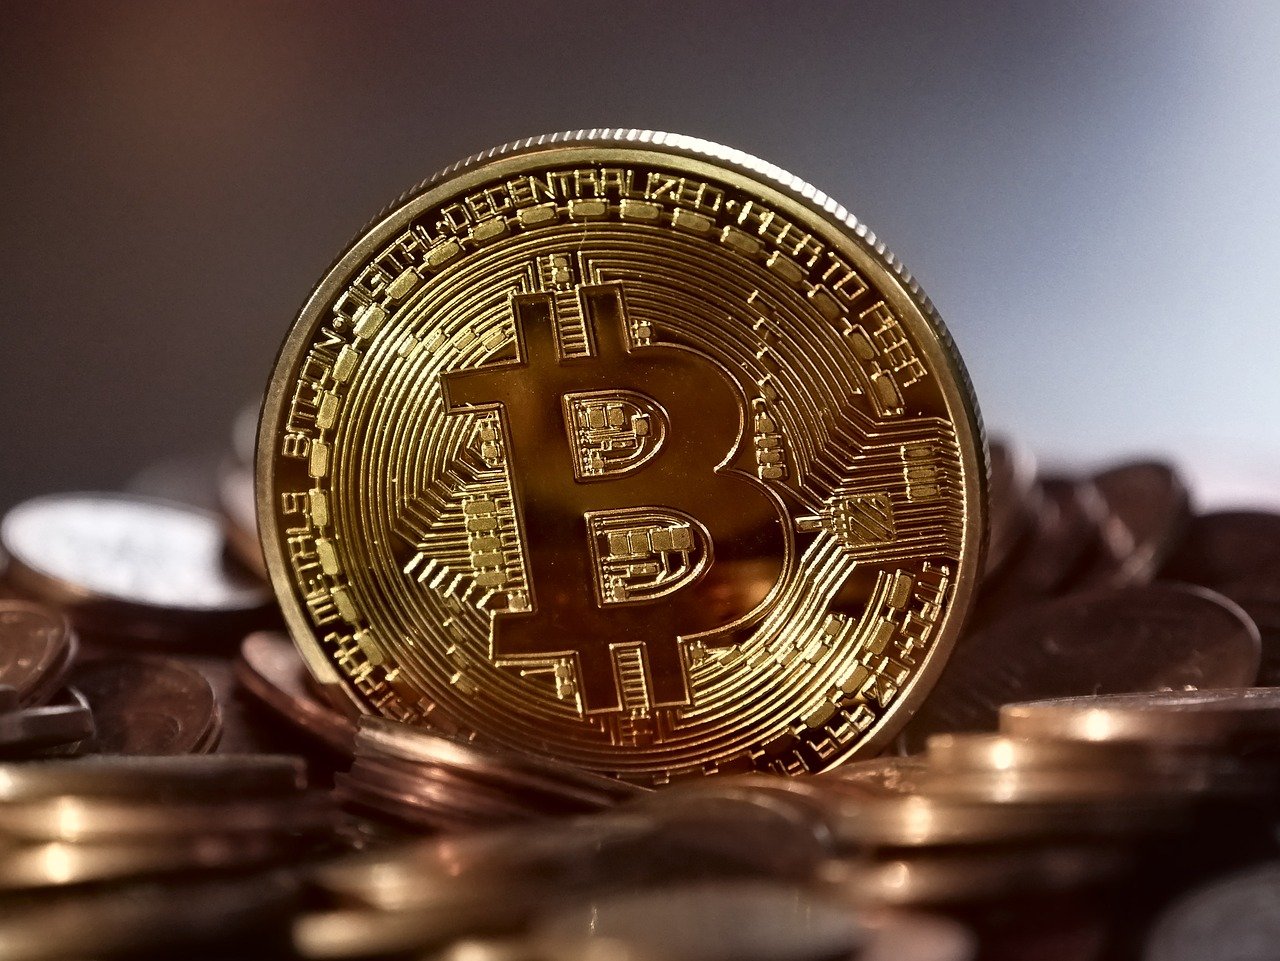 Le bitcoin plonge sous 30.000 dollars, coulé par les régulations chinoises